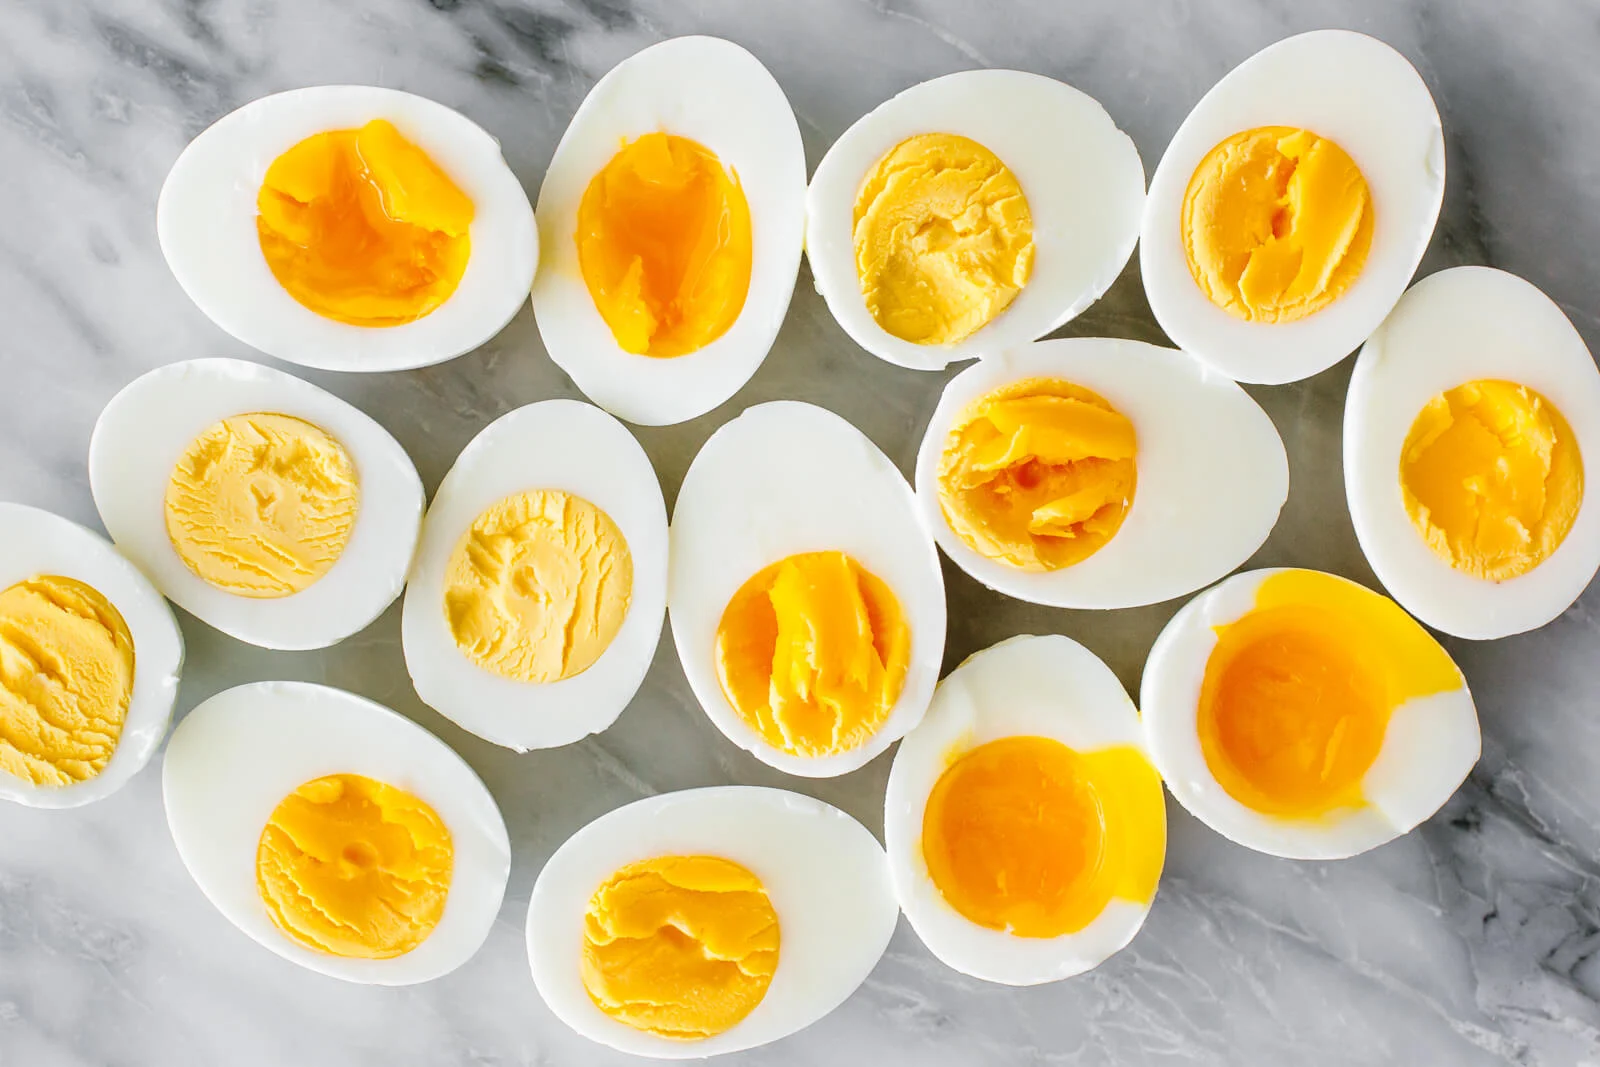 Plastic eggs : अंडे के नाम पर कहीं आप प्लास्टिक तो नहीं खा रहे! ऐसे चेक कर लें